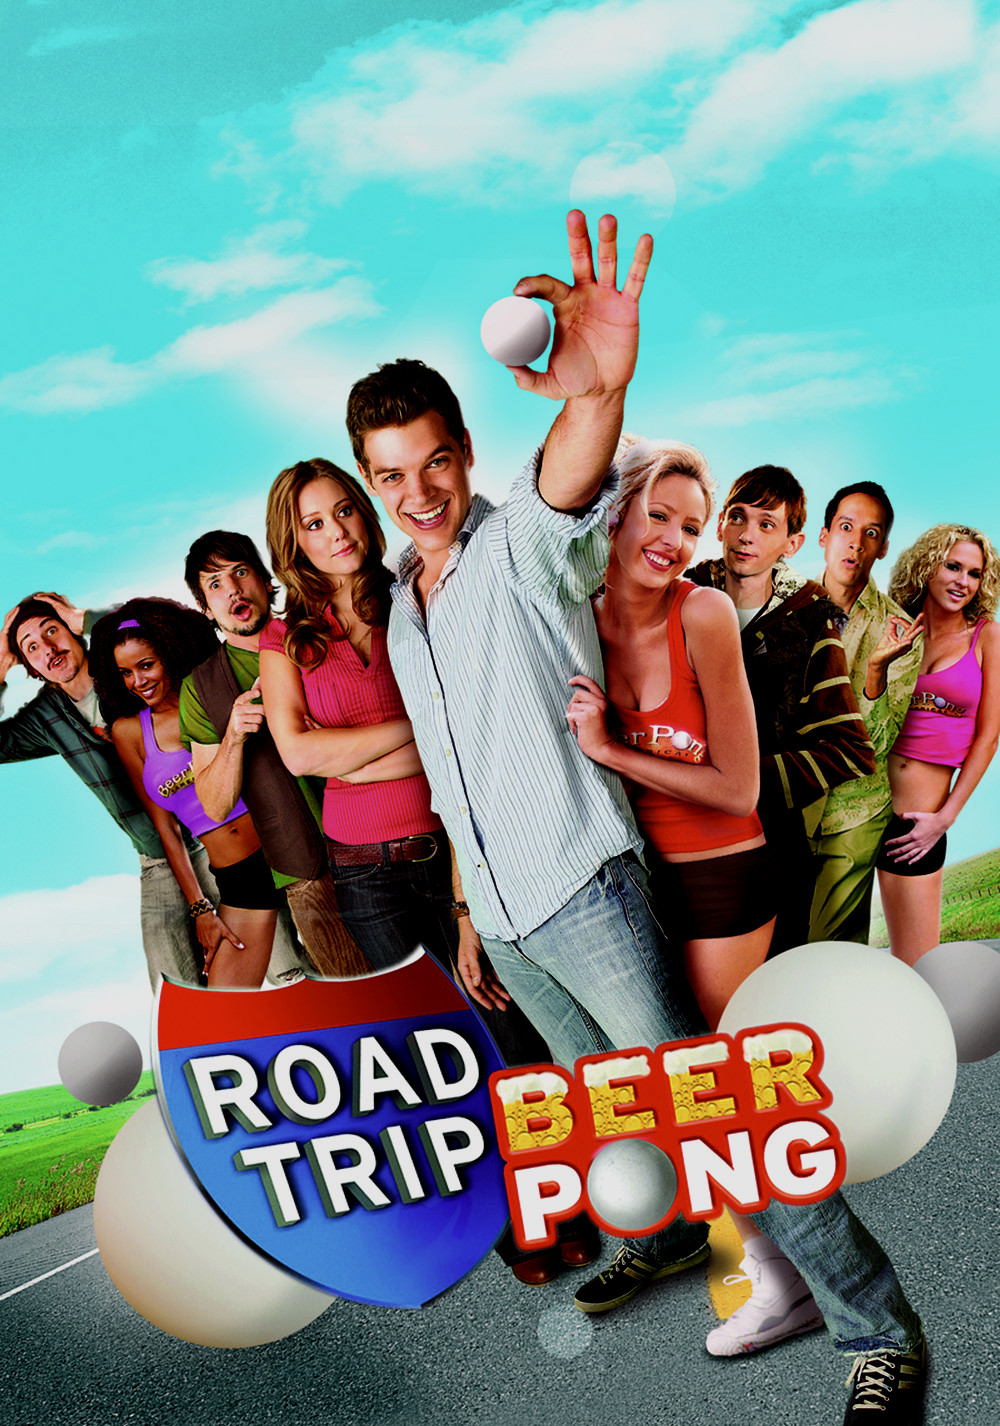 road trip beer pong full movie download